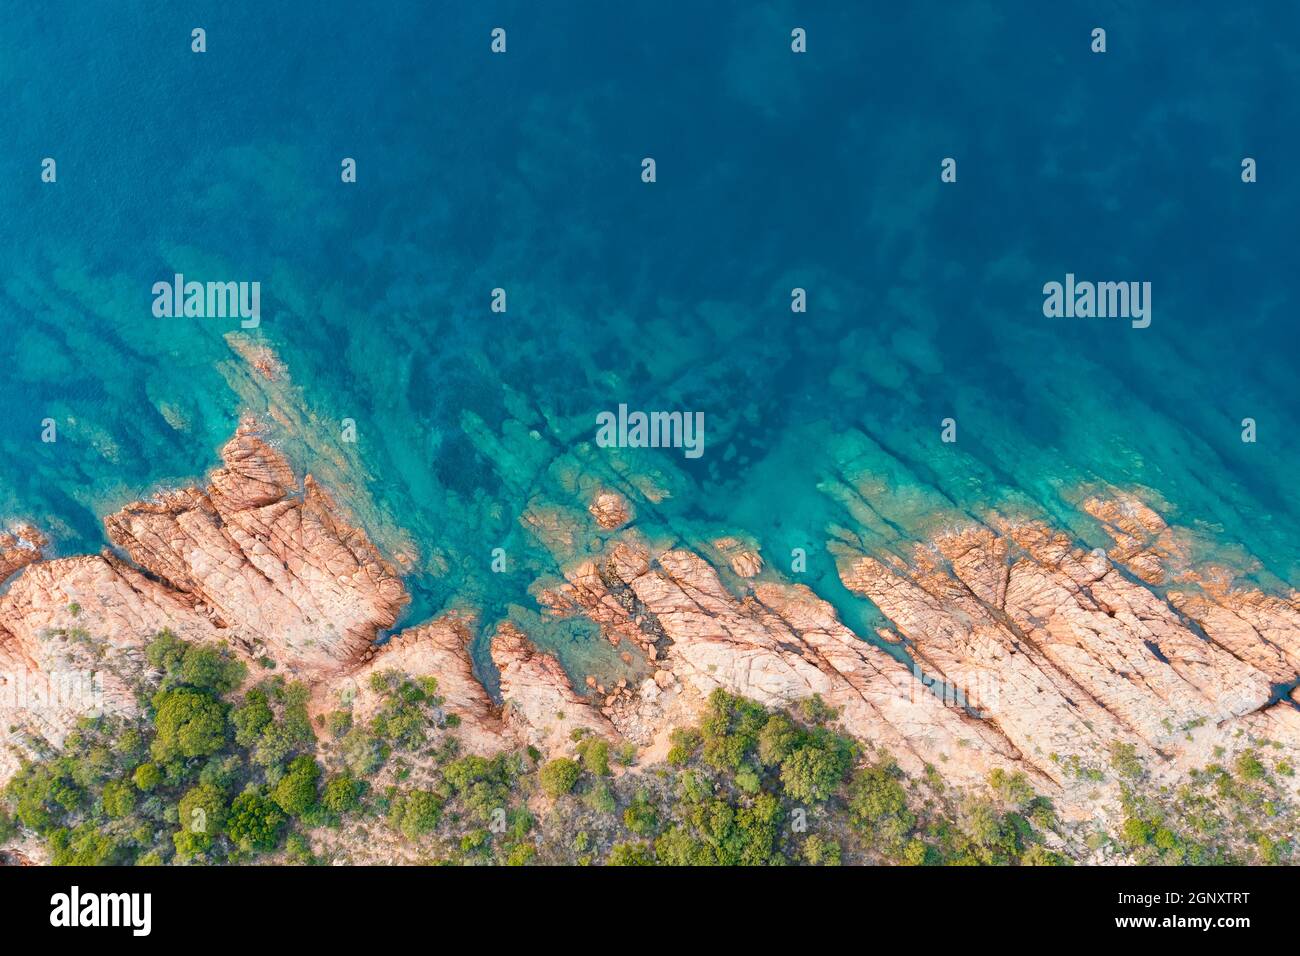 Blick von oben, atemberaubende Luftaufnahme einer grünen und felsigen Küste, die von einem türkisfarbenen, kristallklaren Wasser umspült wird. Liscia Ruja, Costa Smeralda, Sardinien Stockfoto